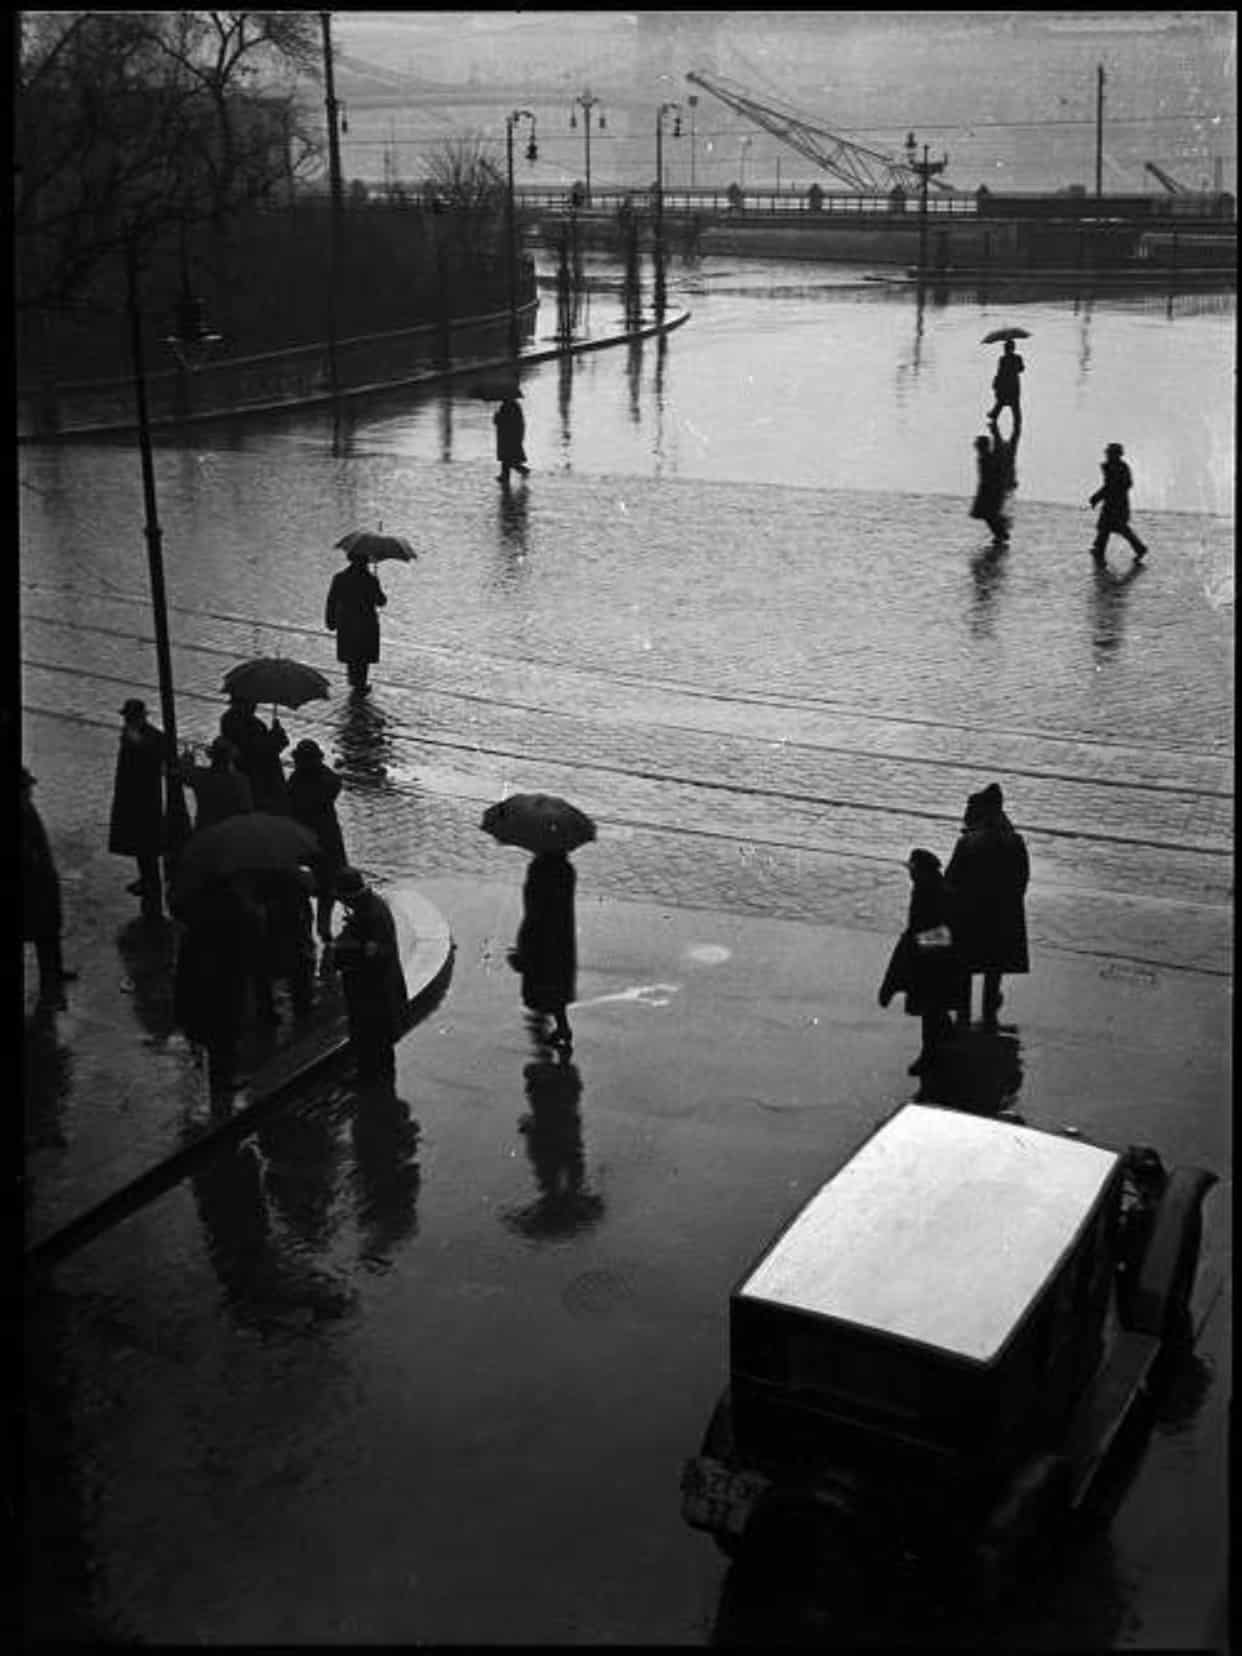 2b. Imre Kinszki, <i>Járókelők esőben</i> (« Piétons sous la pluie »), 1932 © FSZEK